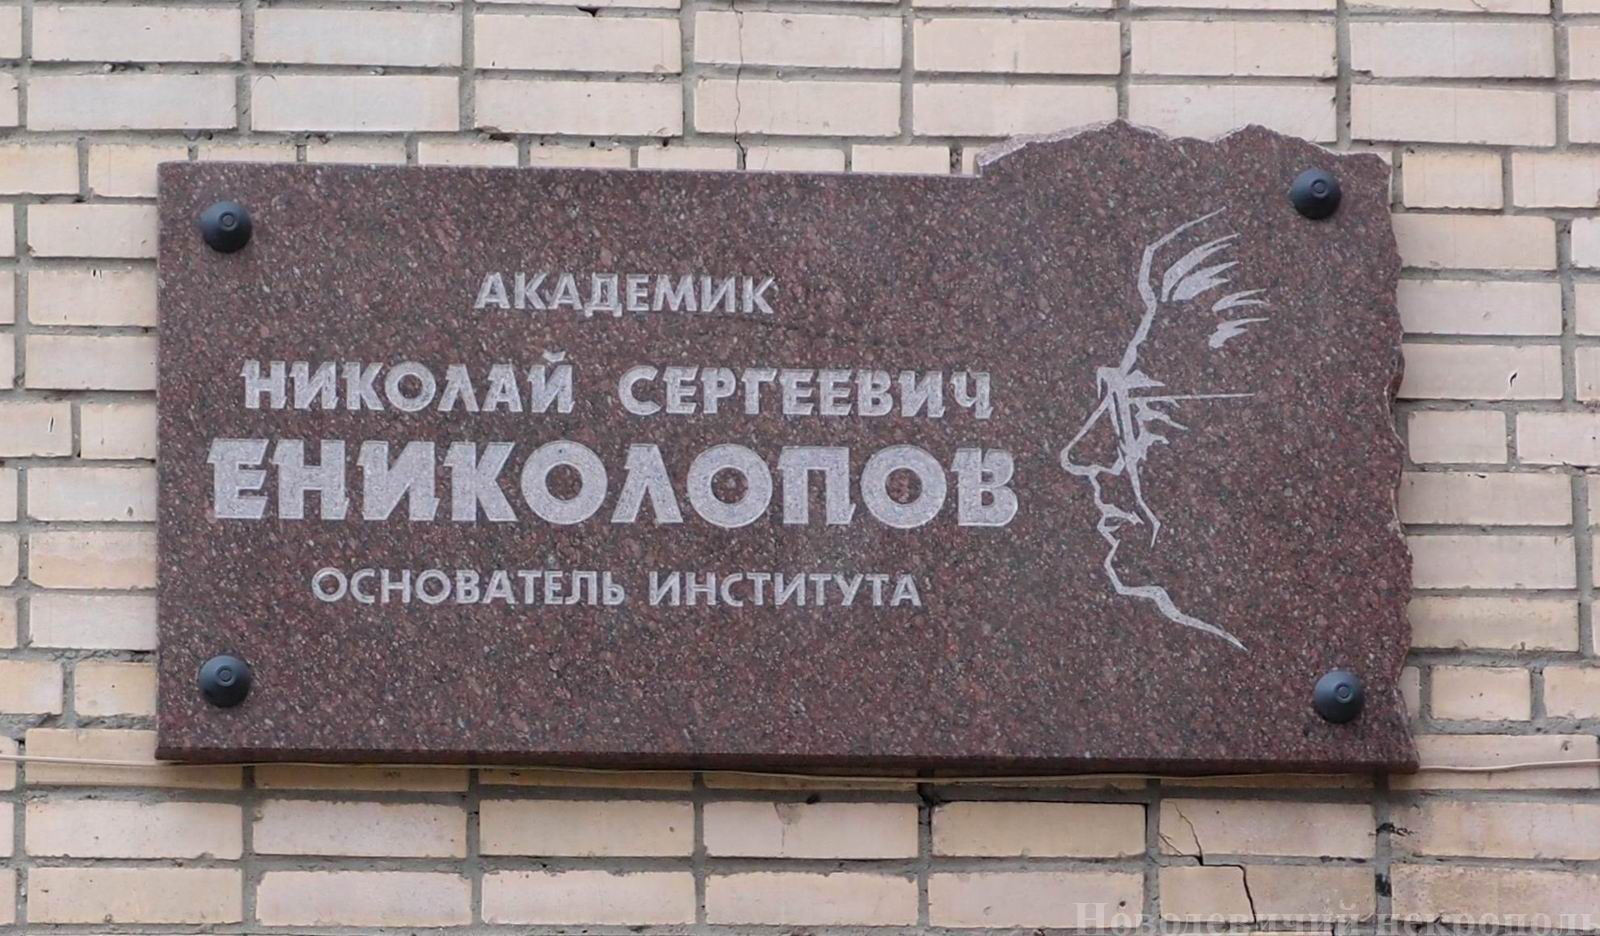 Мемориальная доска Ениколопову Н.С. (1924–1993), на Профсоюзной улице, дом 70, открыта 12.3.1998.